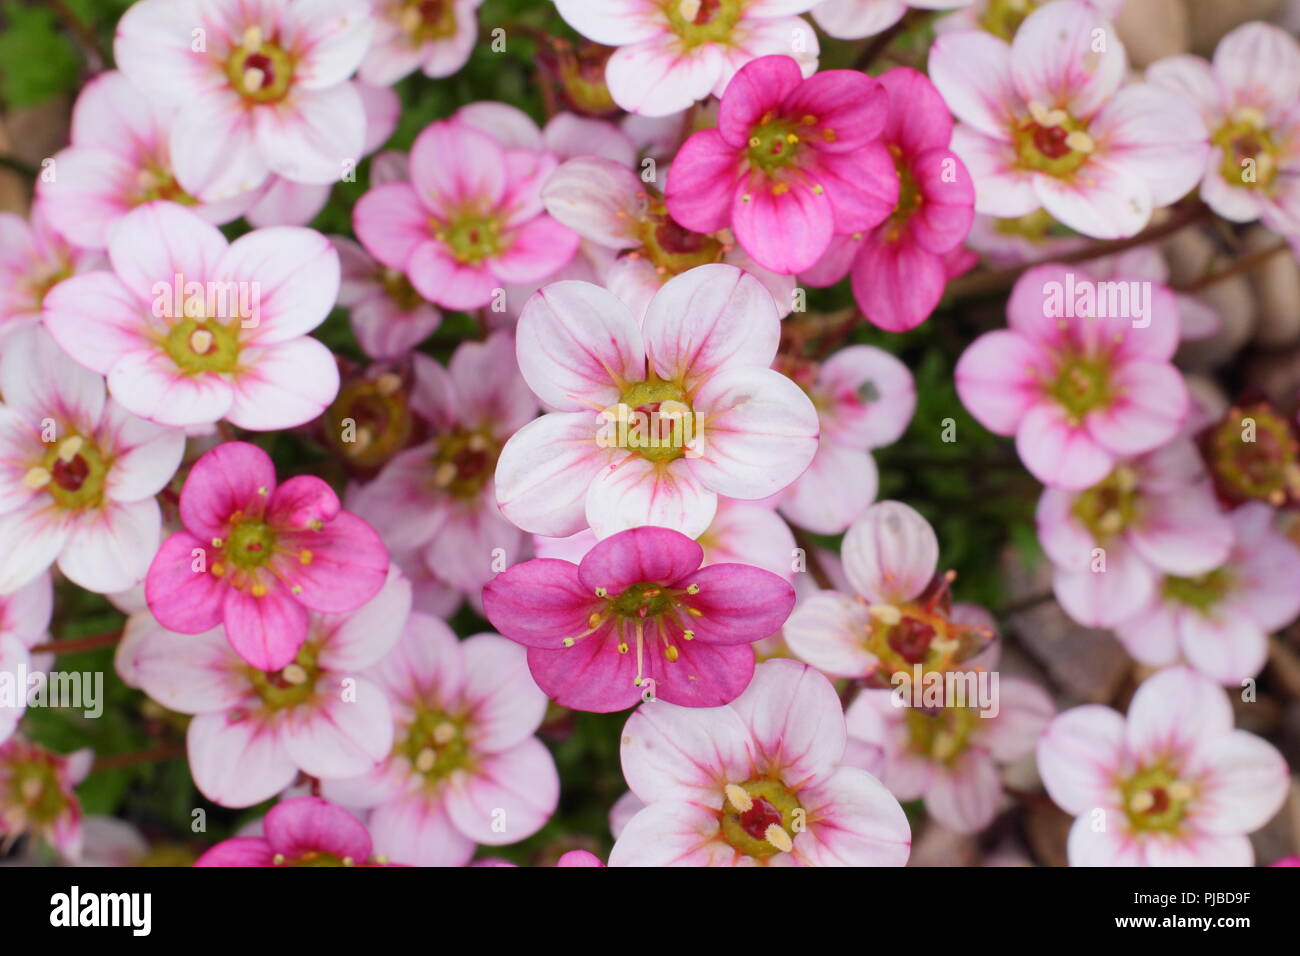 Saxifraga arendsii 'Highlander'. Pink form alpine plant in flower in spring garden, UK Stock Photo